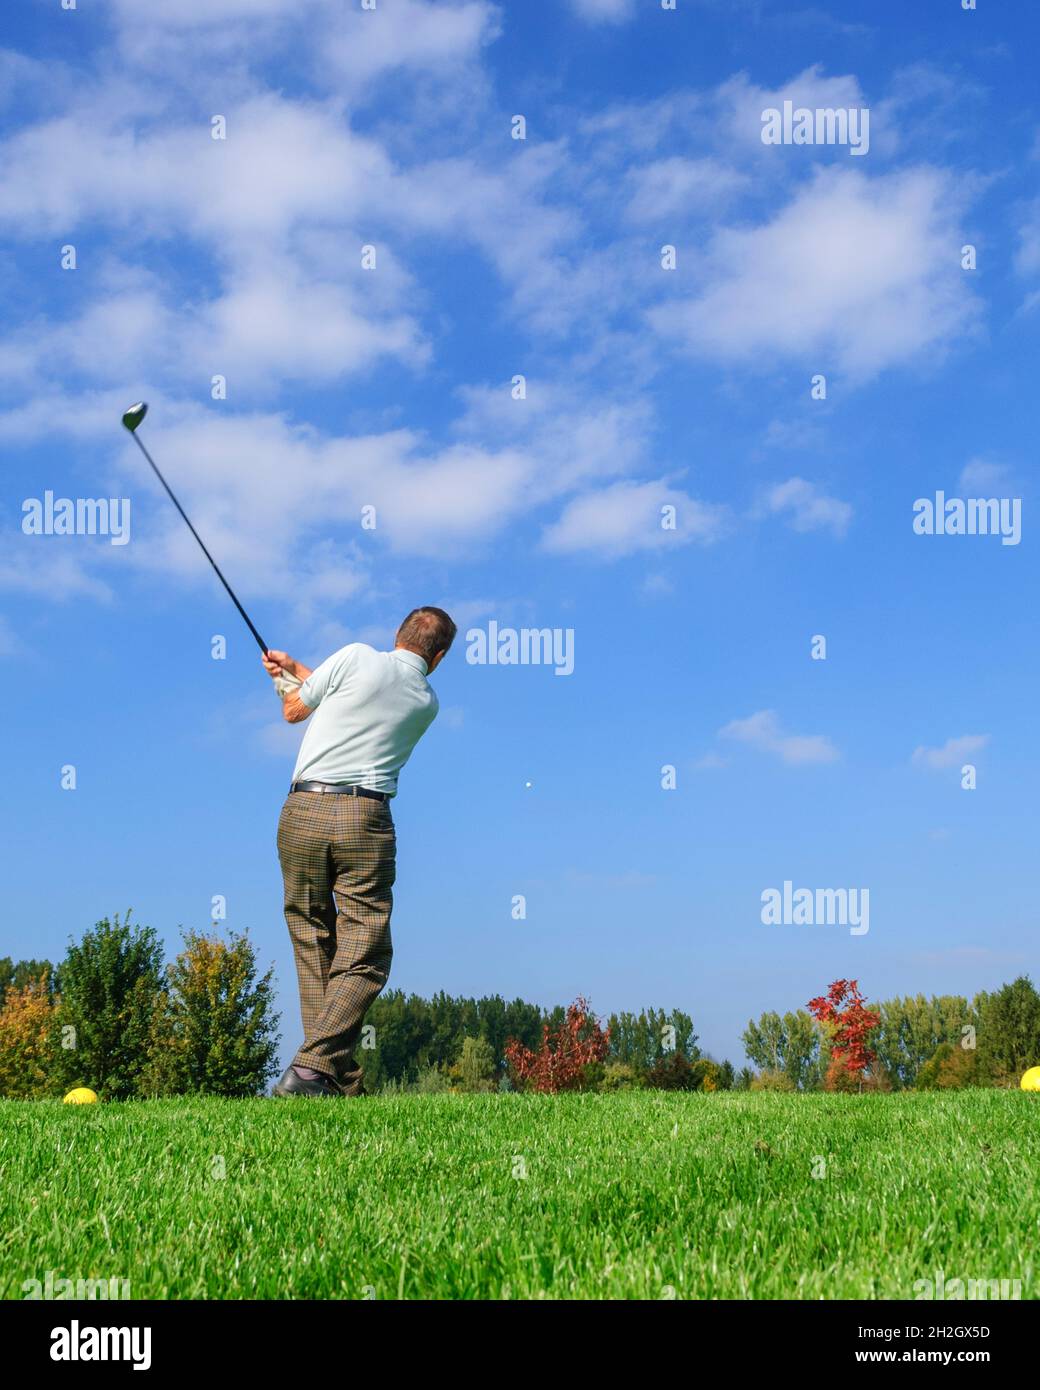 Un joueur de golf plus âgé frappe la balle du tee Banque D'Images